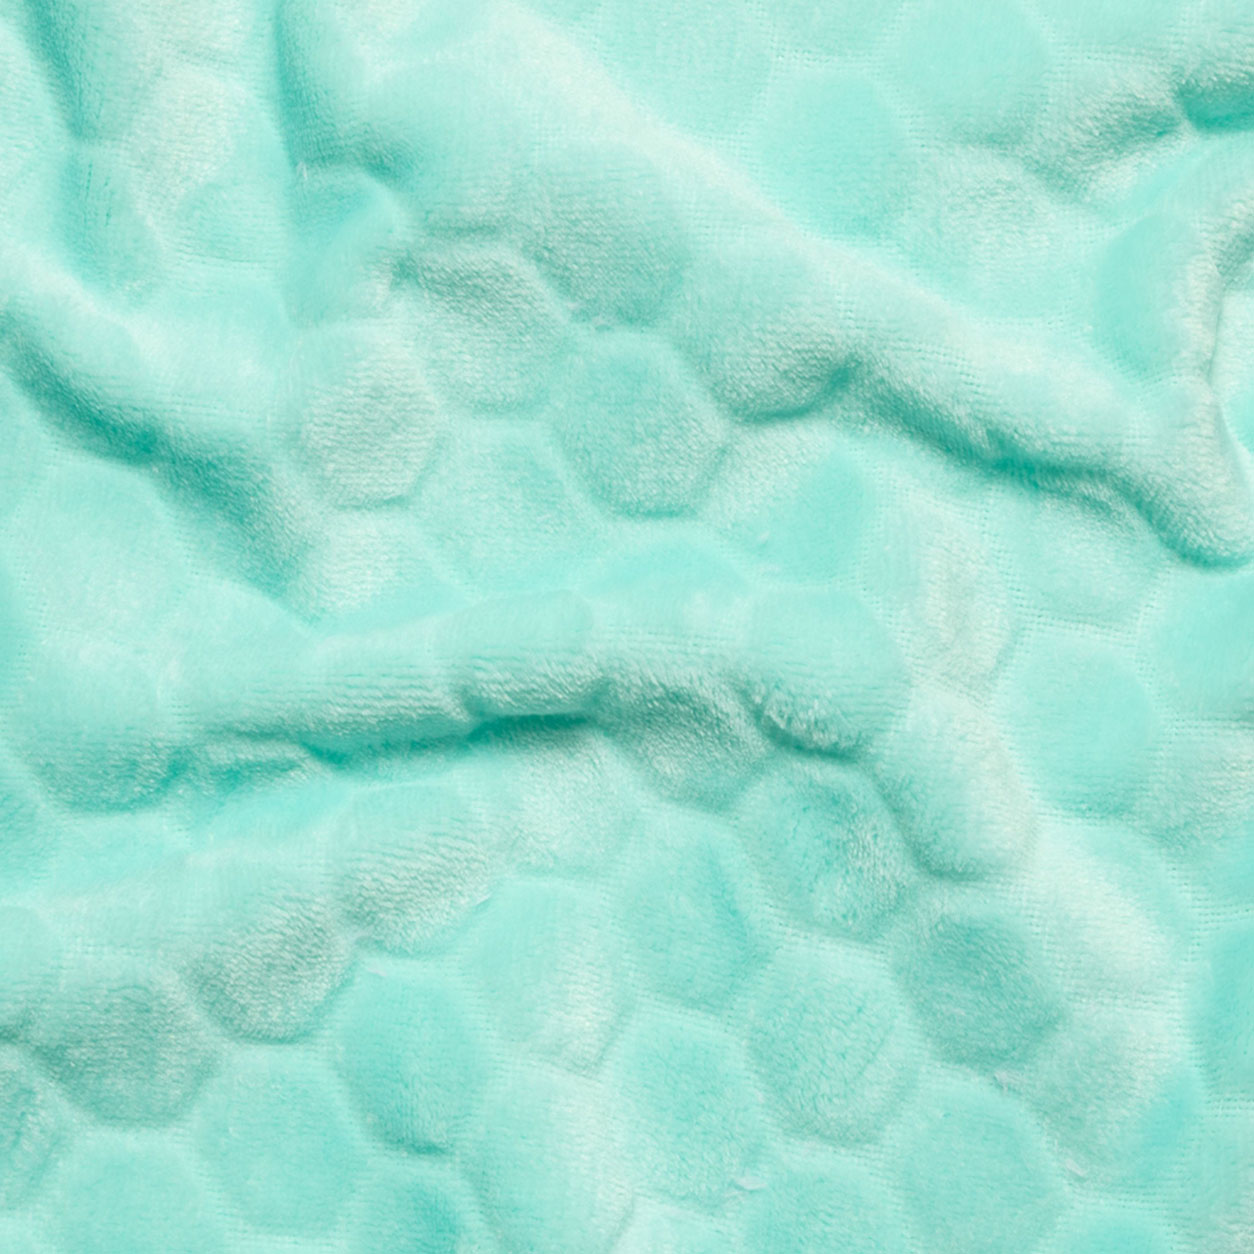 Pile tessuto bolle acqua marina